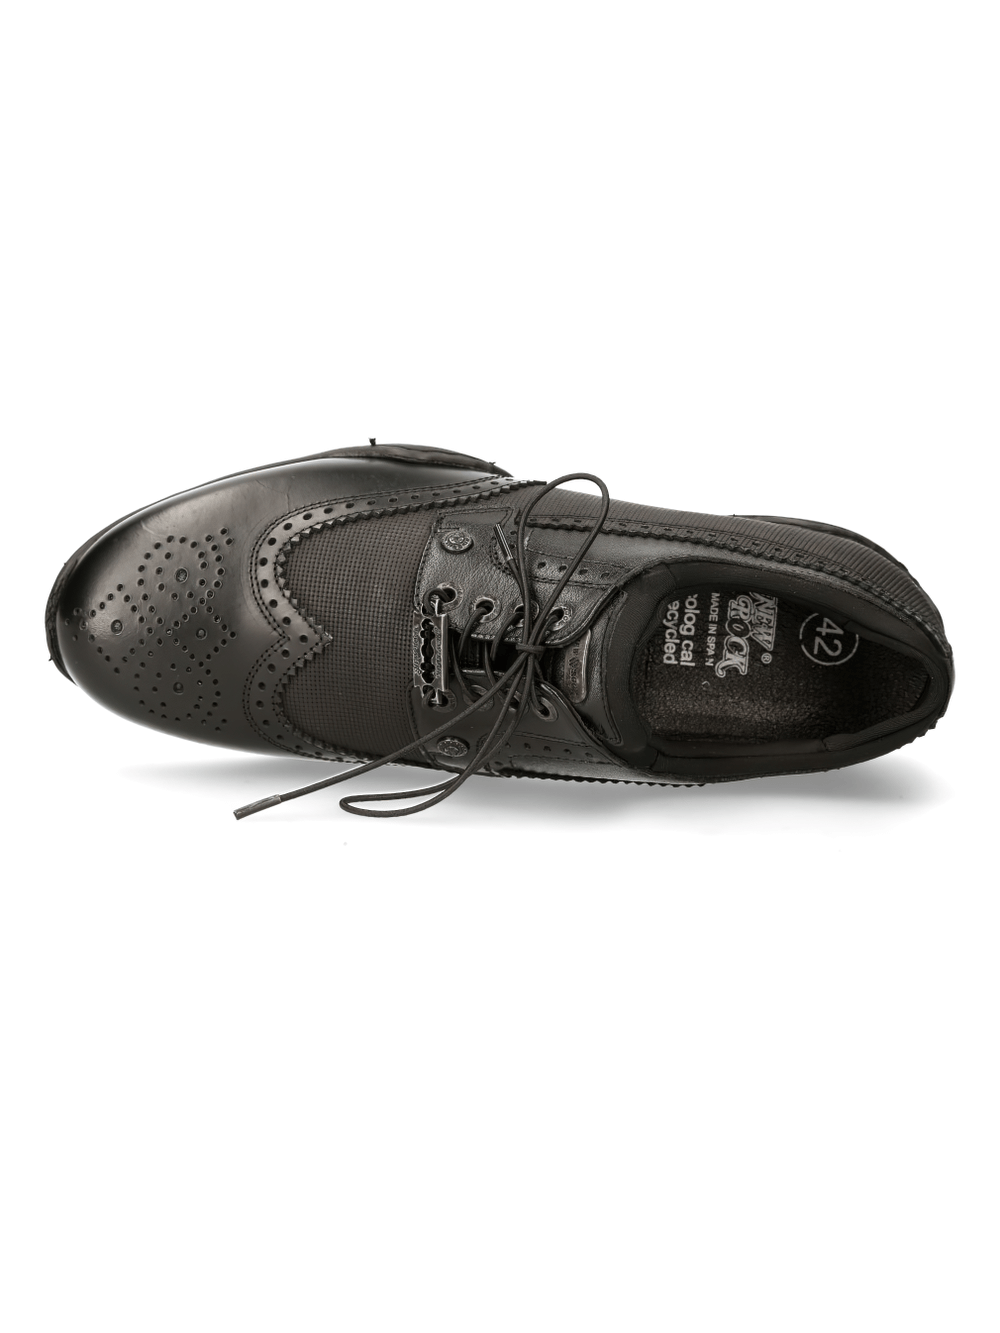 NEW ROCK Zapatillas deportivas de moda urbana con cordones de cuero negro